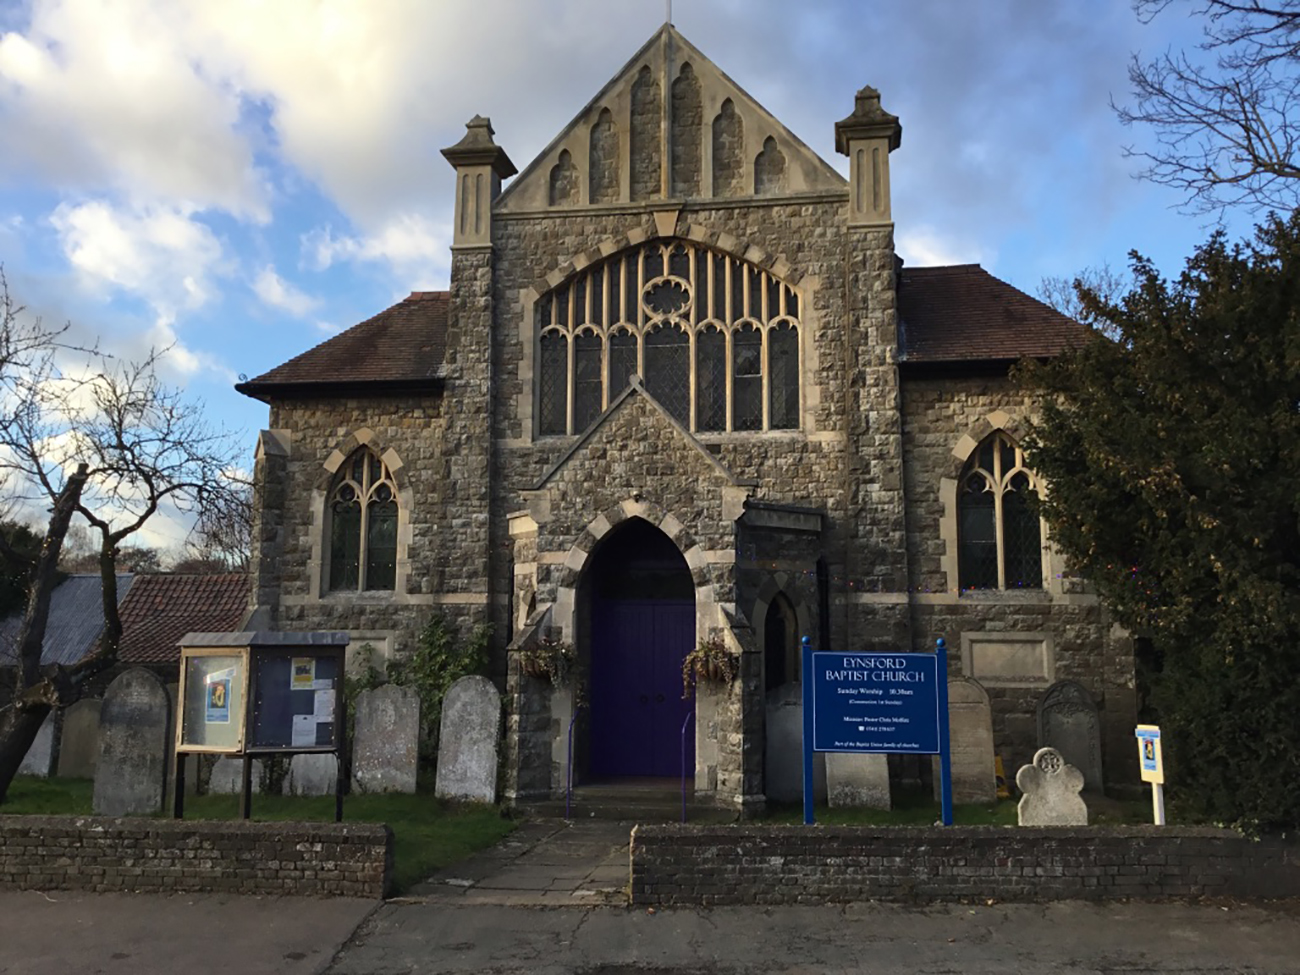 Eynsford Baptist Church - the building